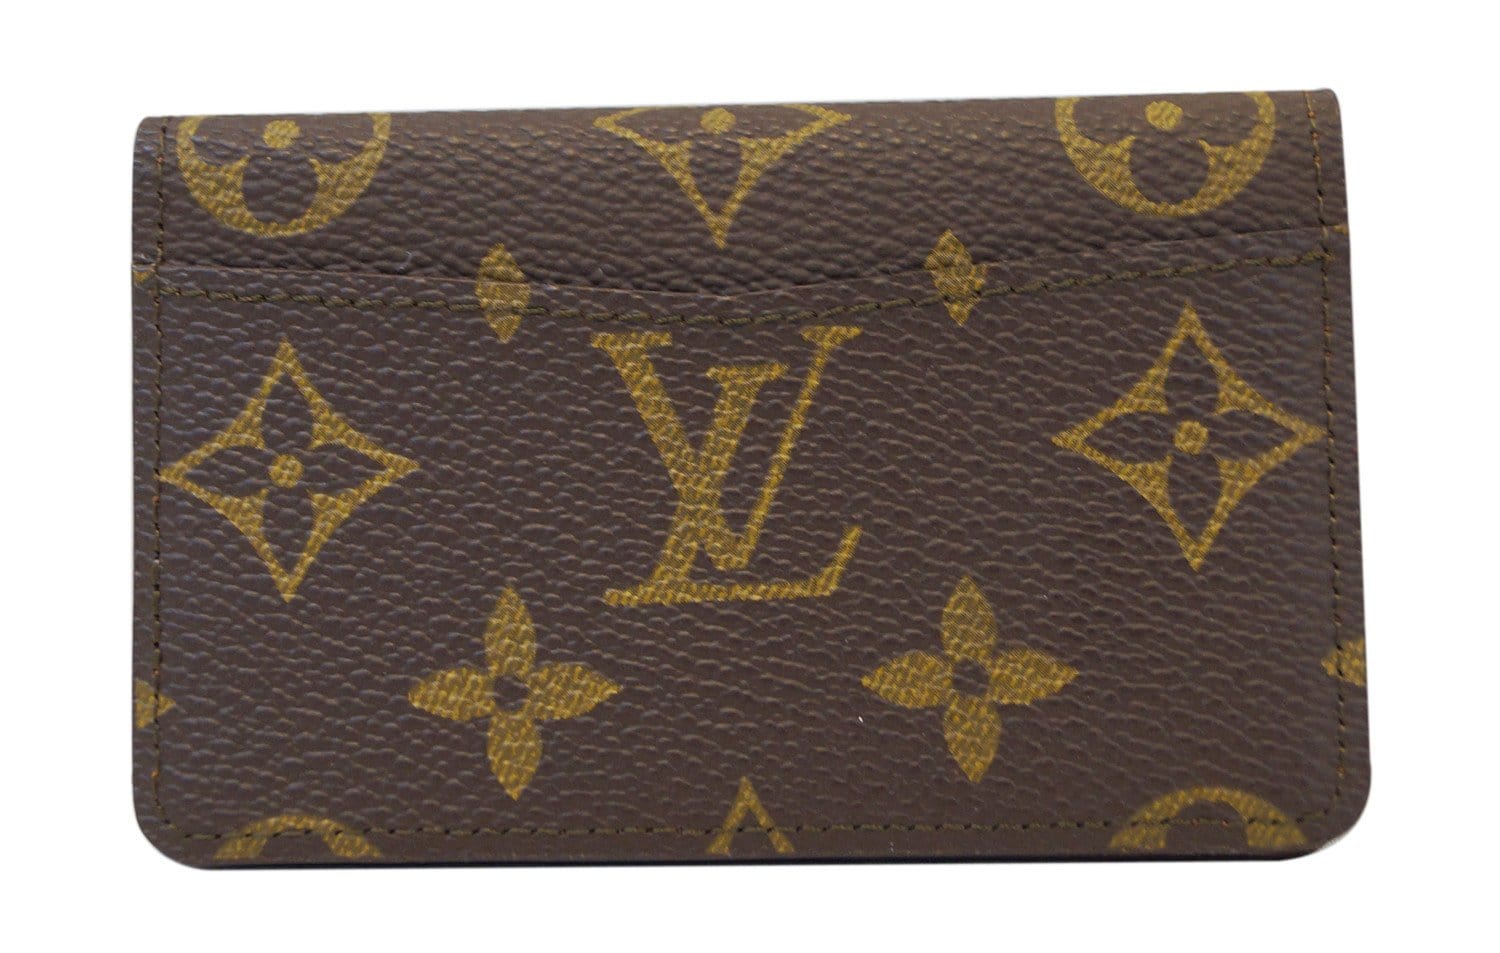 Louis Vuitton Credit Card Case  Credit card cases, Louis vuitton, Vuitton